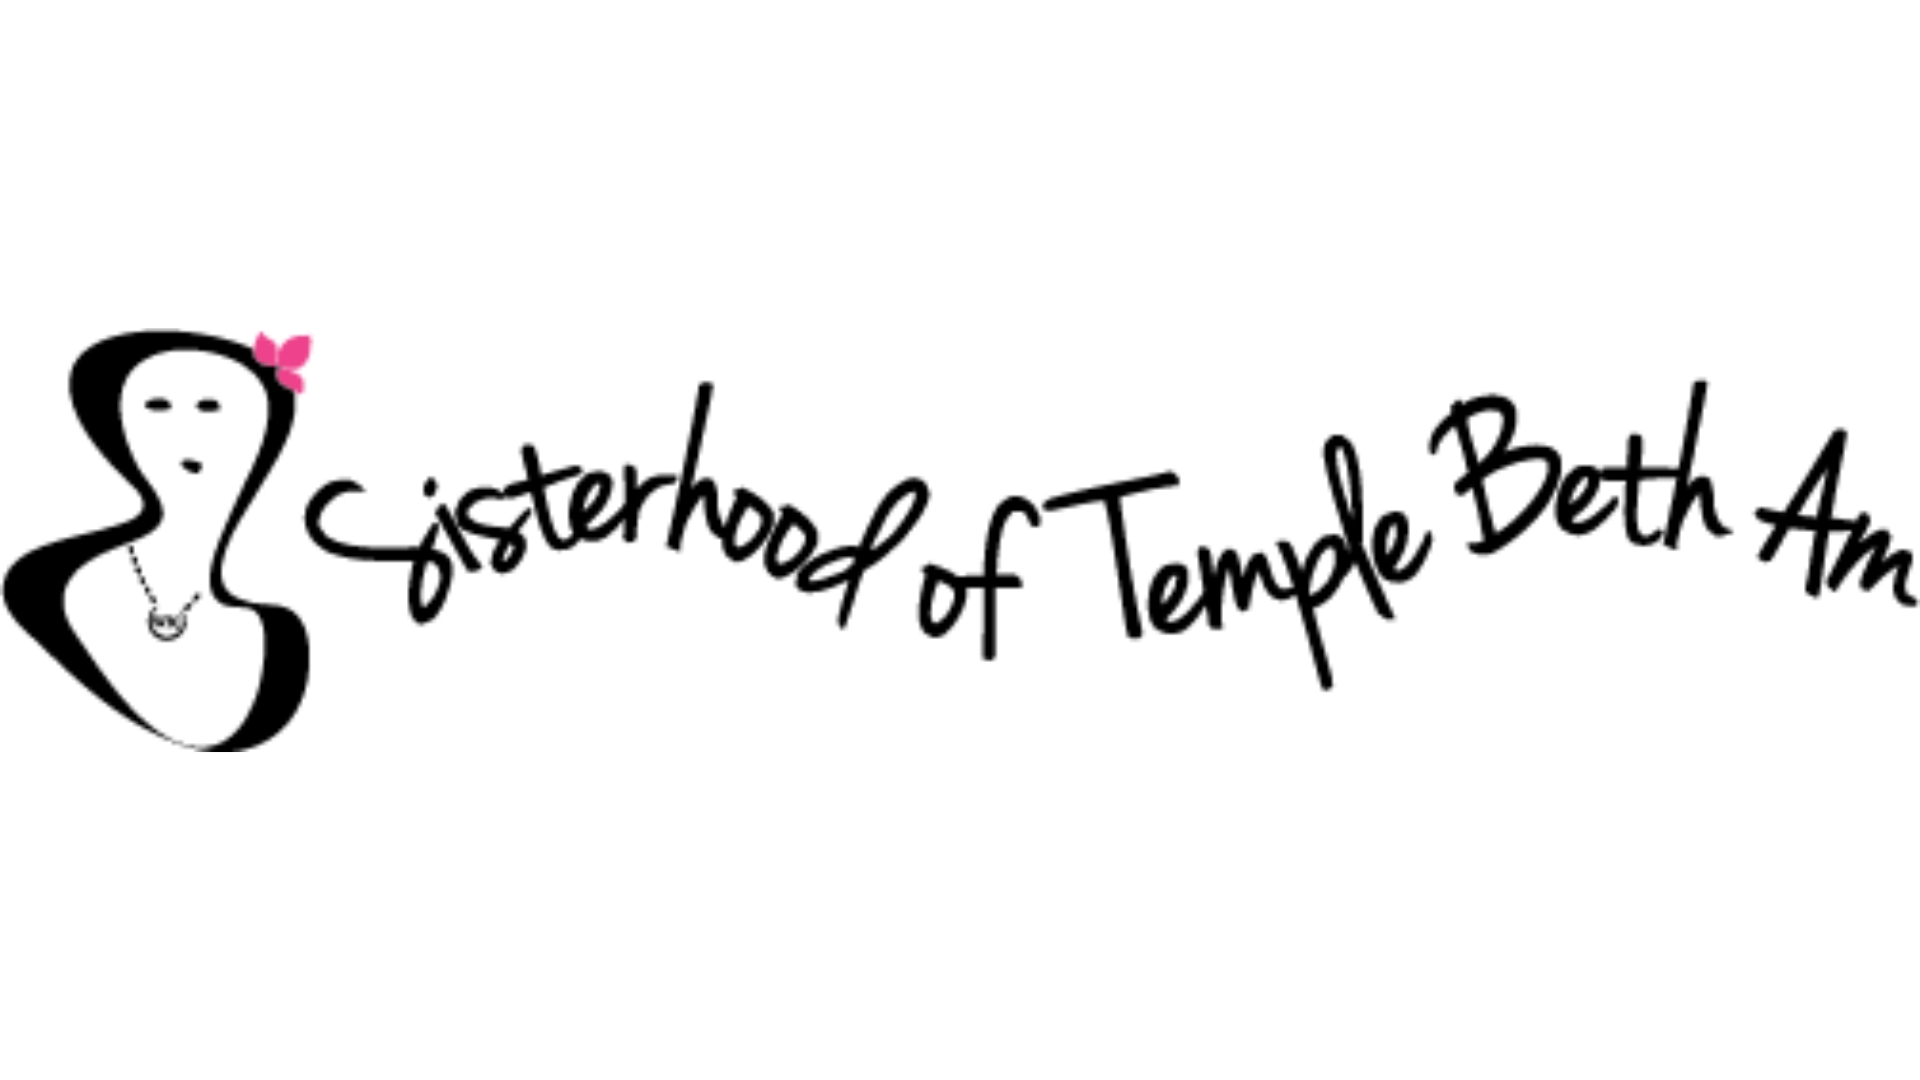 Sisterhood of Temple Beth Am